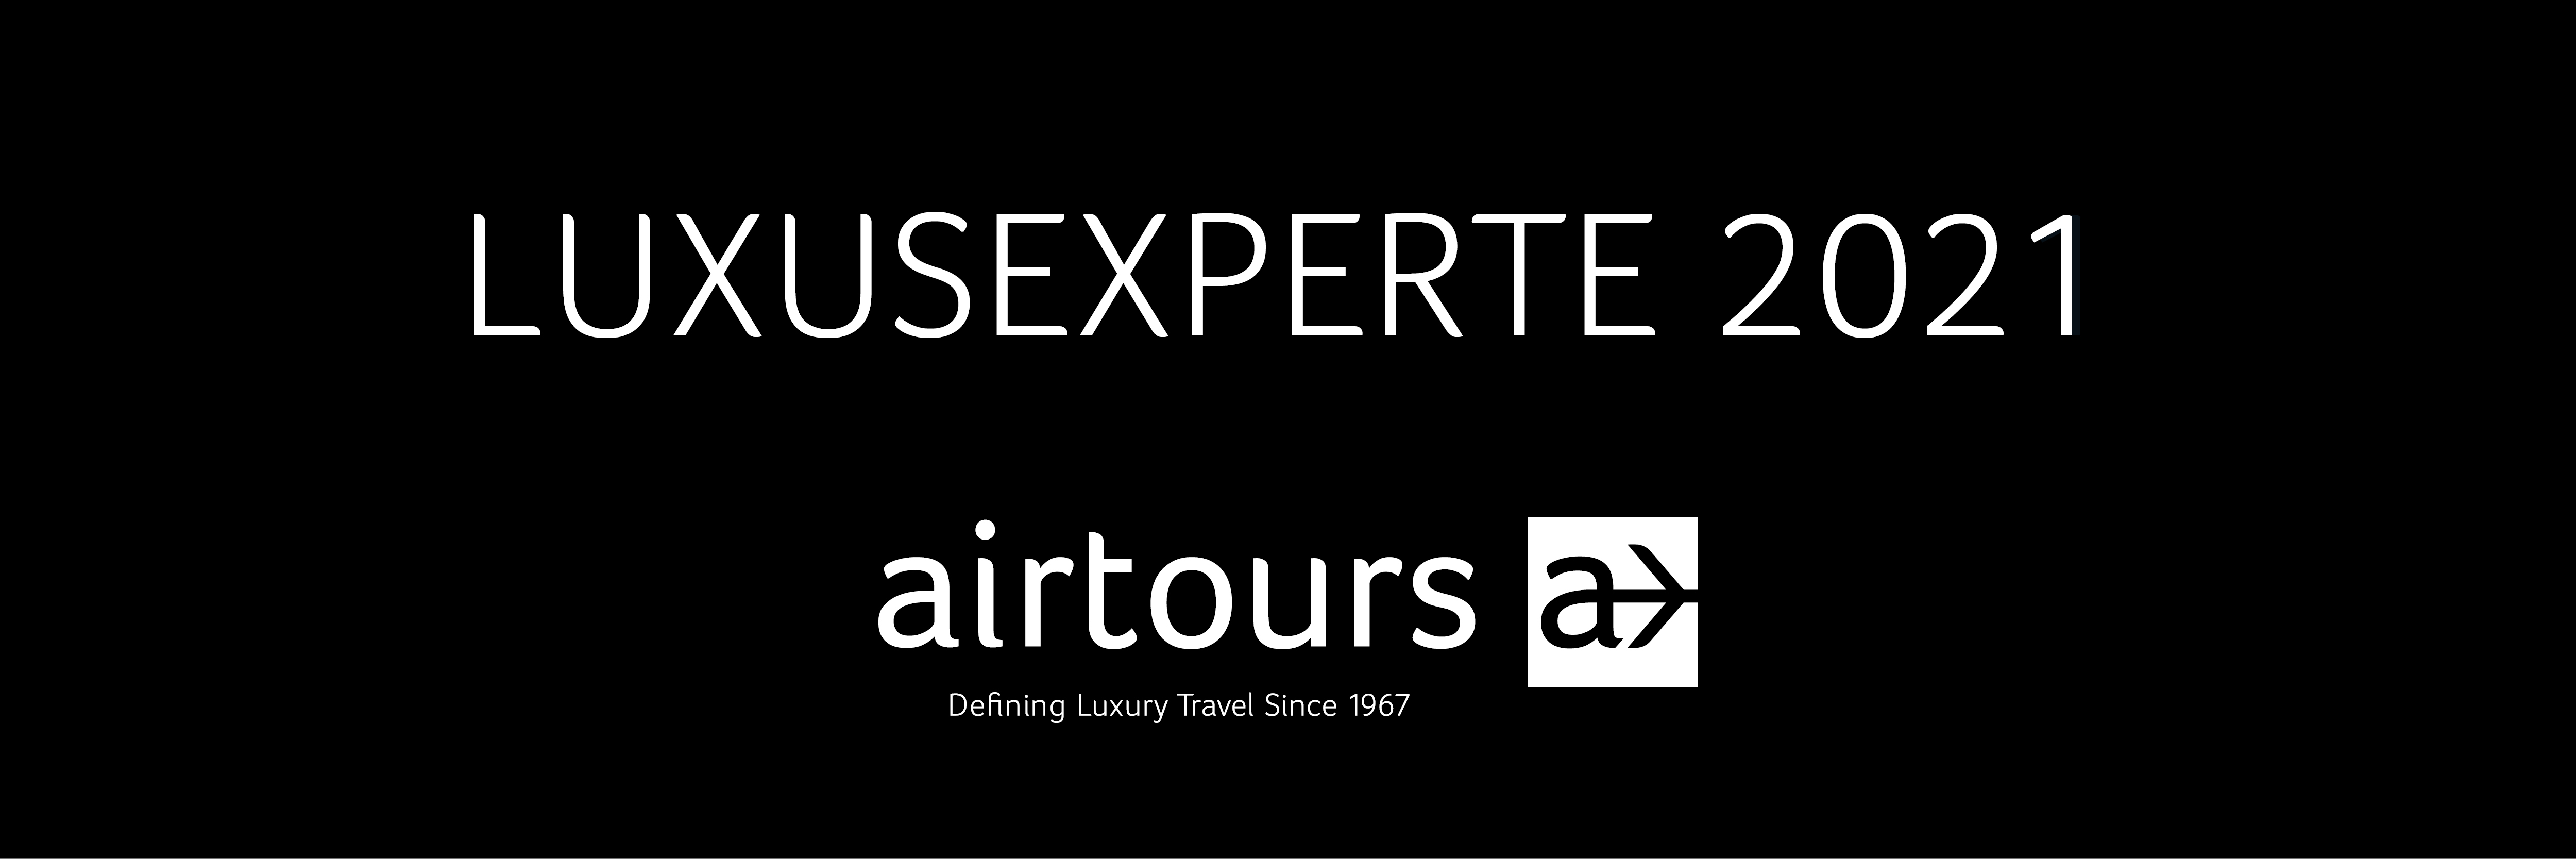 airtours LUXUSEXPERTE 2021